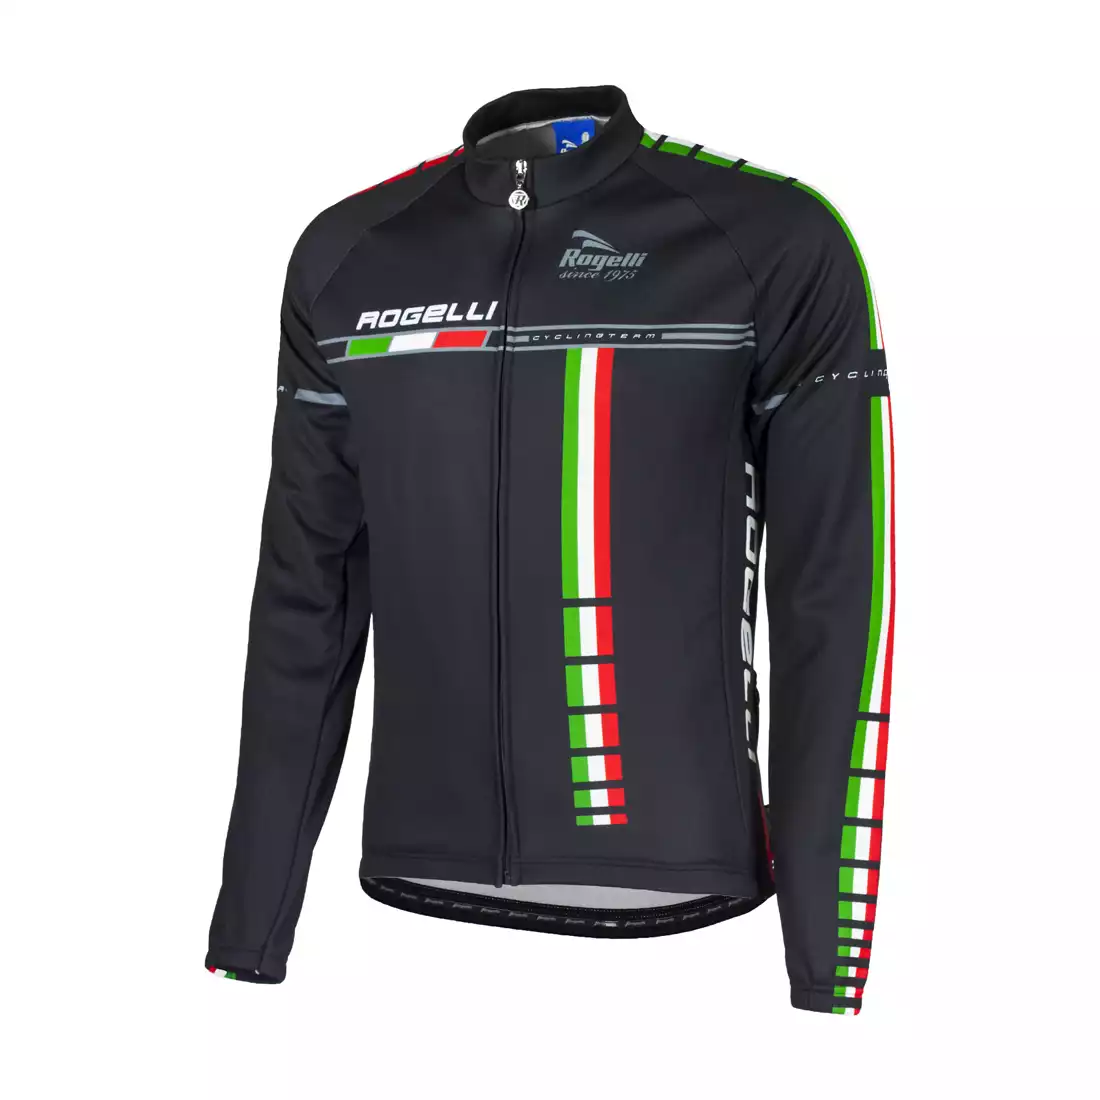 ROGELLI BIKE TEAM - męska bluza rowerowa 001.967, kolor: czarny